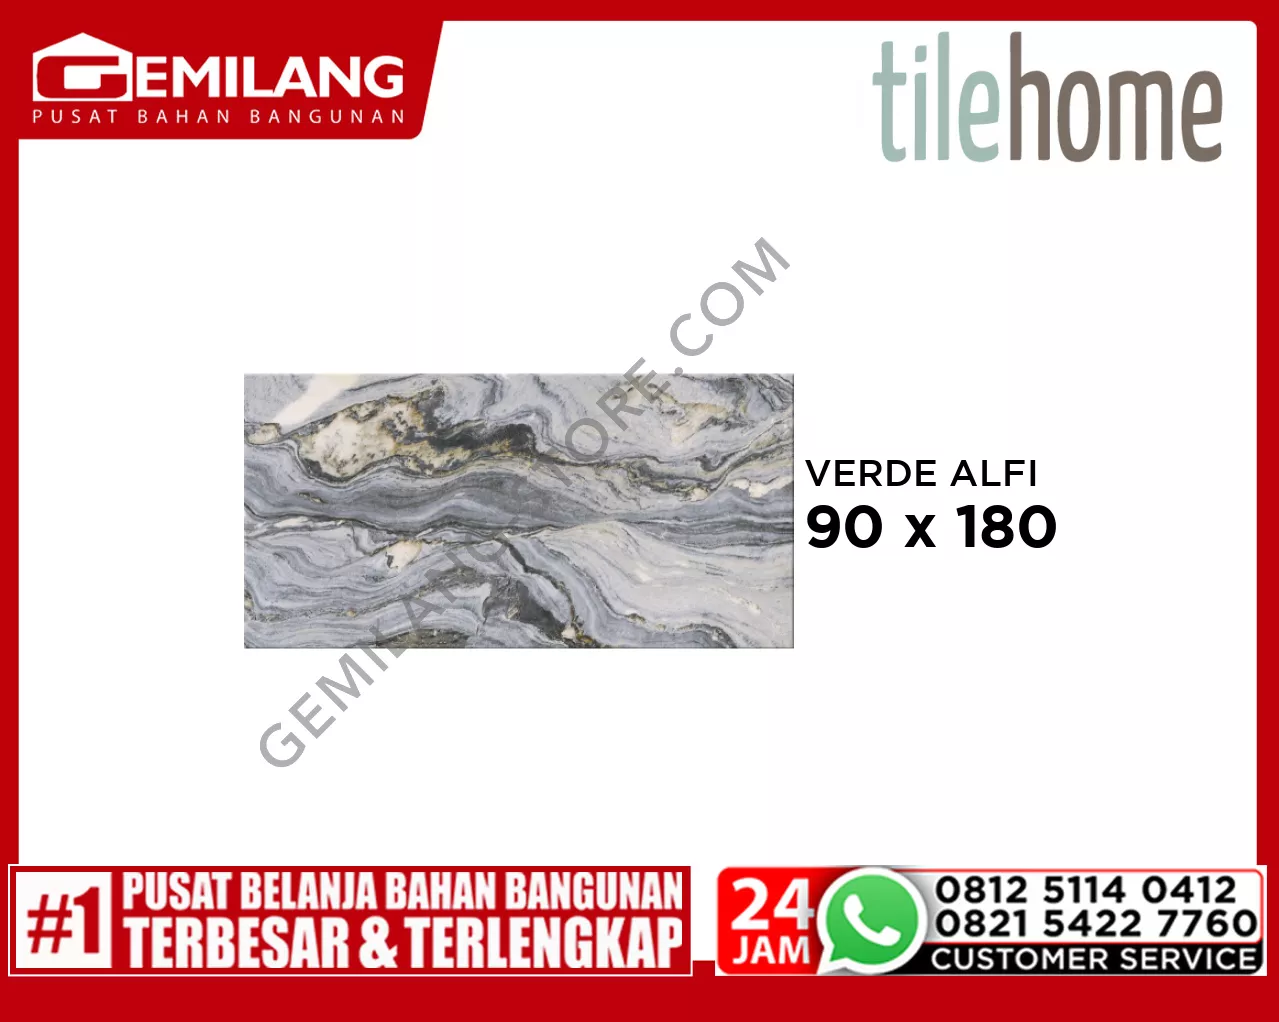 TILEHOME GRANIT VERDE ALFI RK189H203B 90 x 180